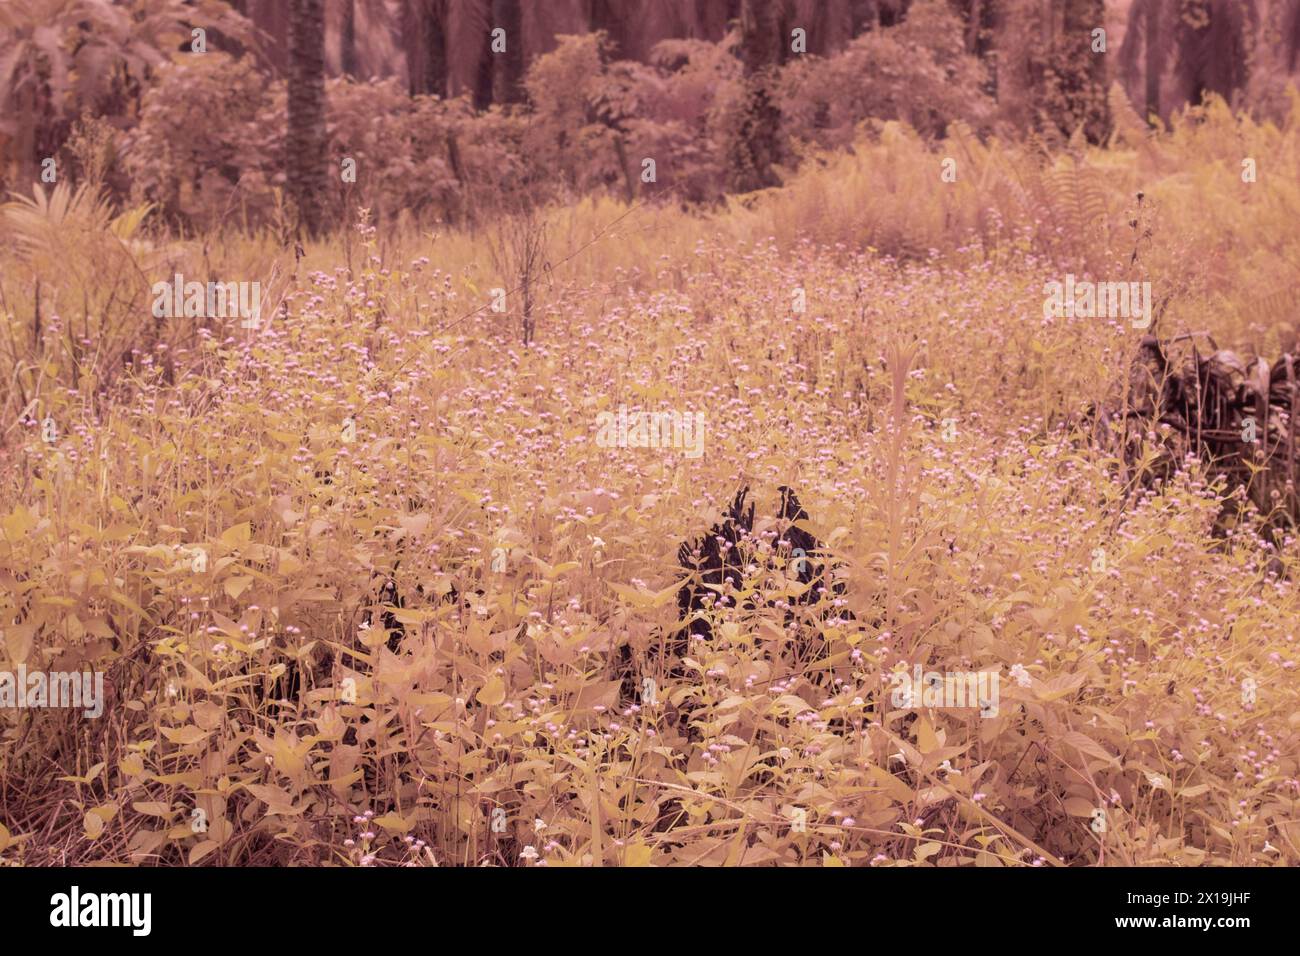 image infrarouge de l'herbe fontaine rose touffue dans la prairie sauvage. Banque D'Images